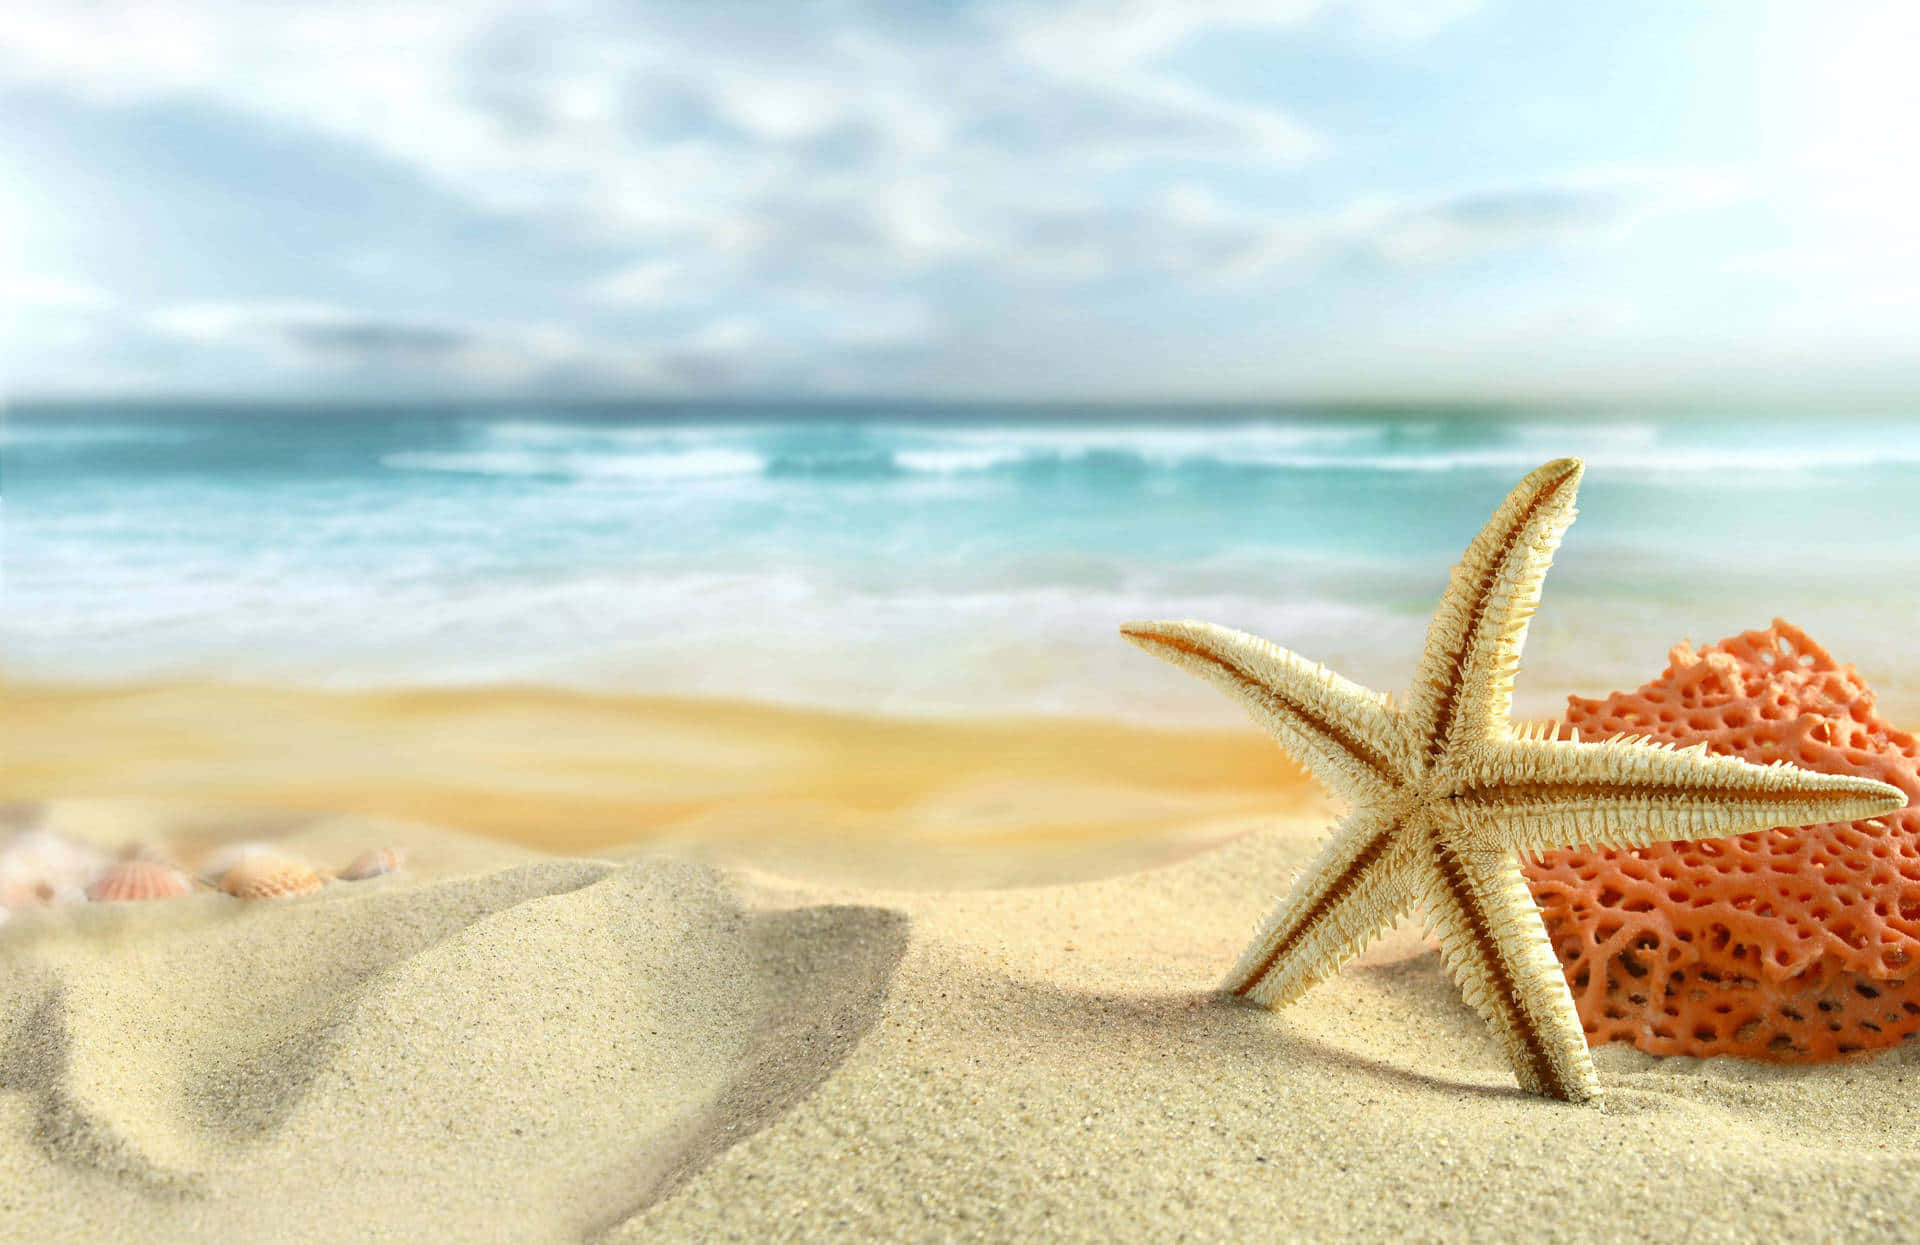 "A sandy and peaceful beach on a sunny day"